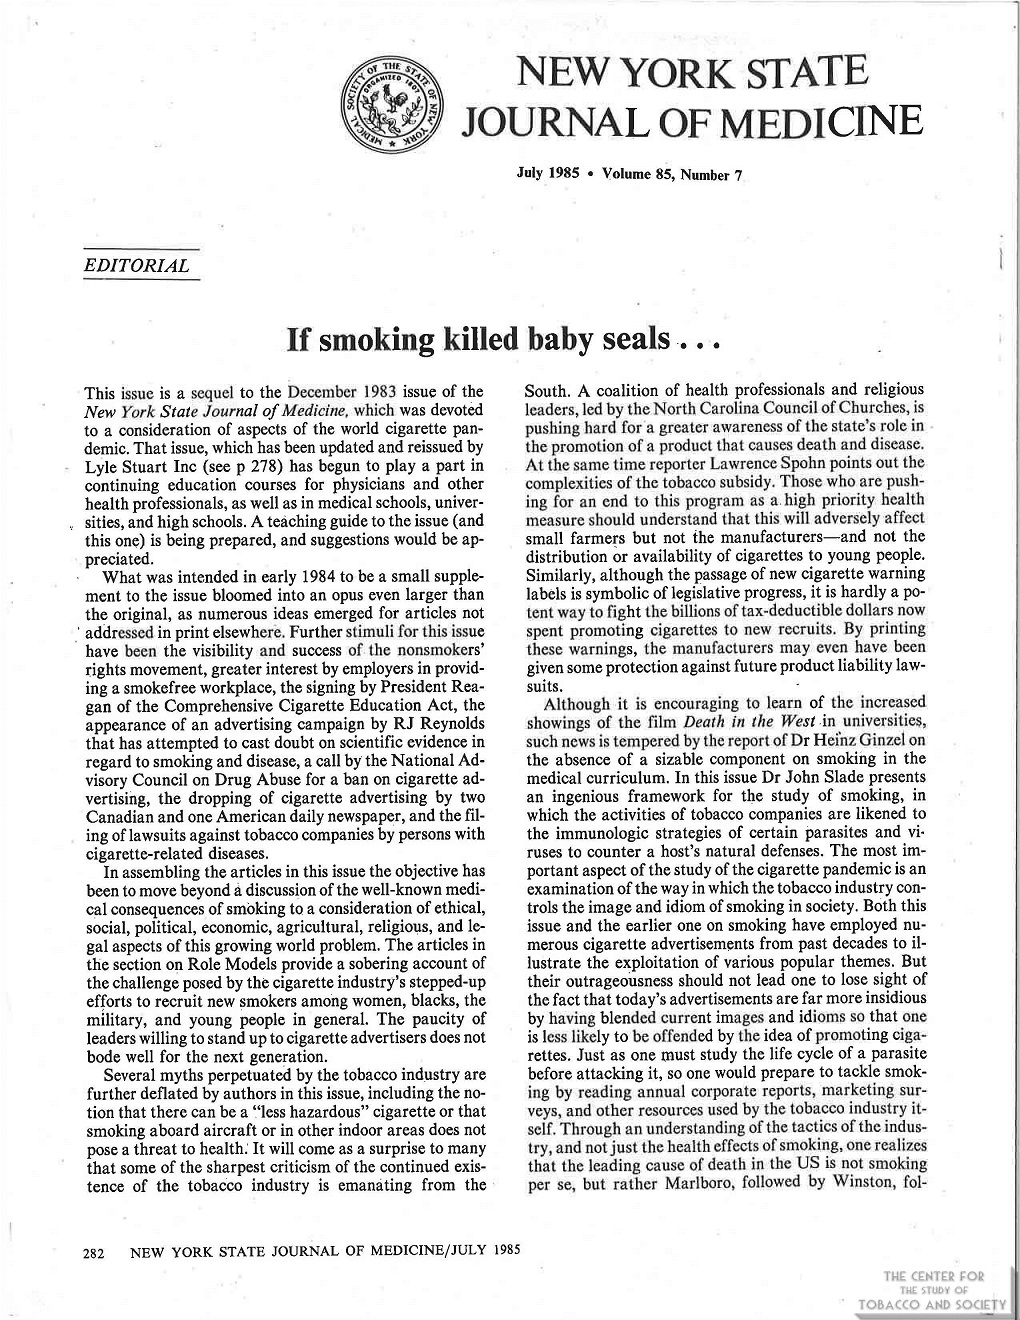 1985 - NYJSM - Alan Blum - If smoking killed baby seals